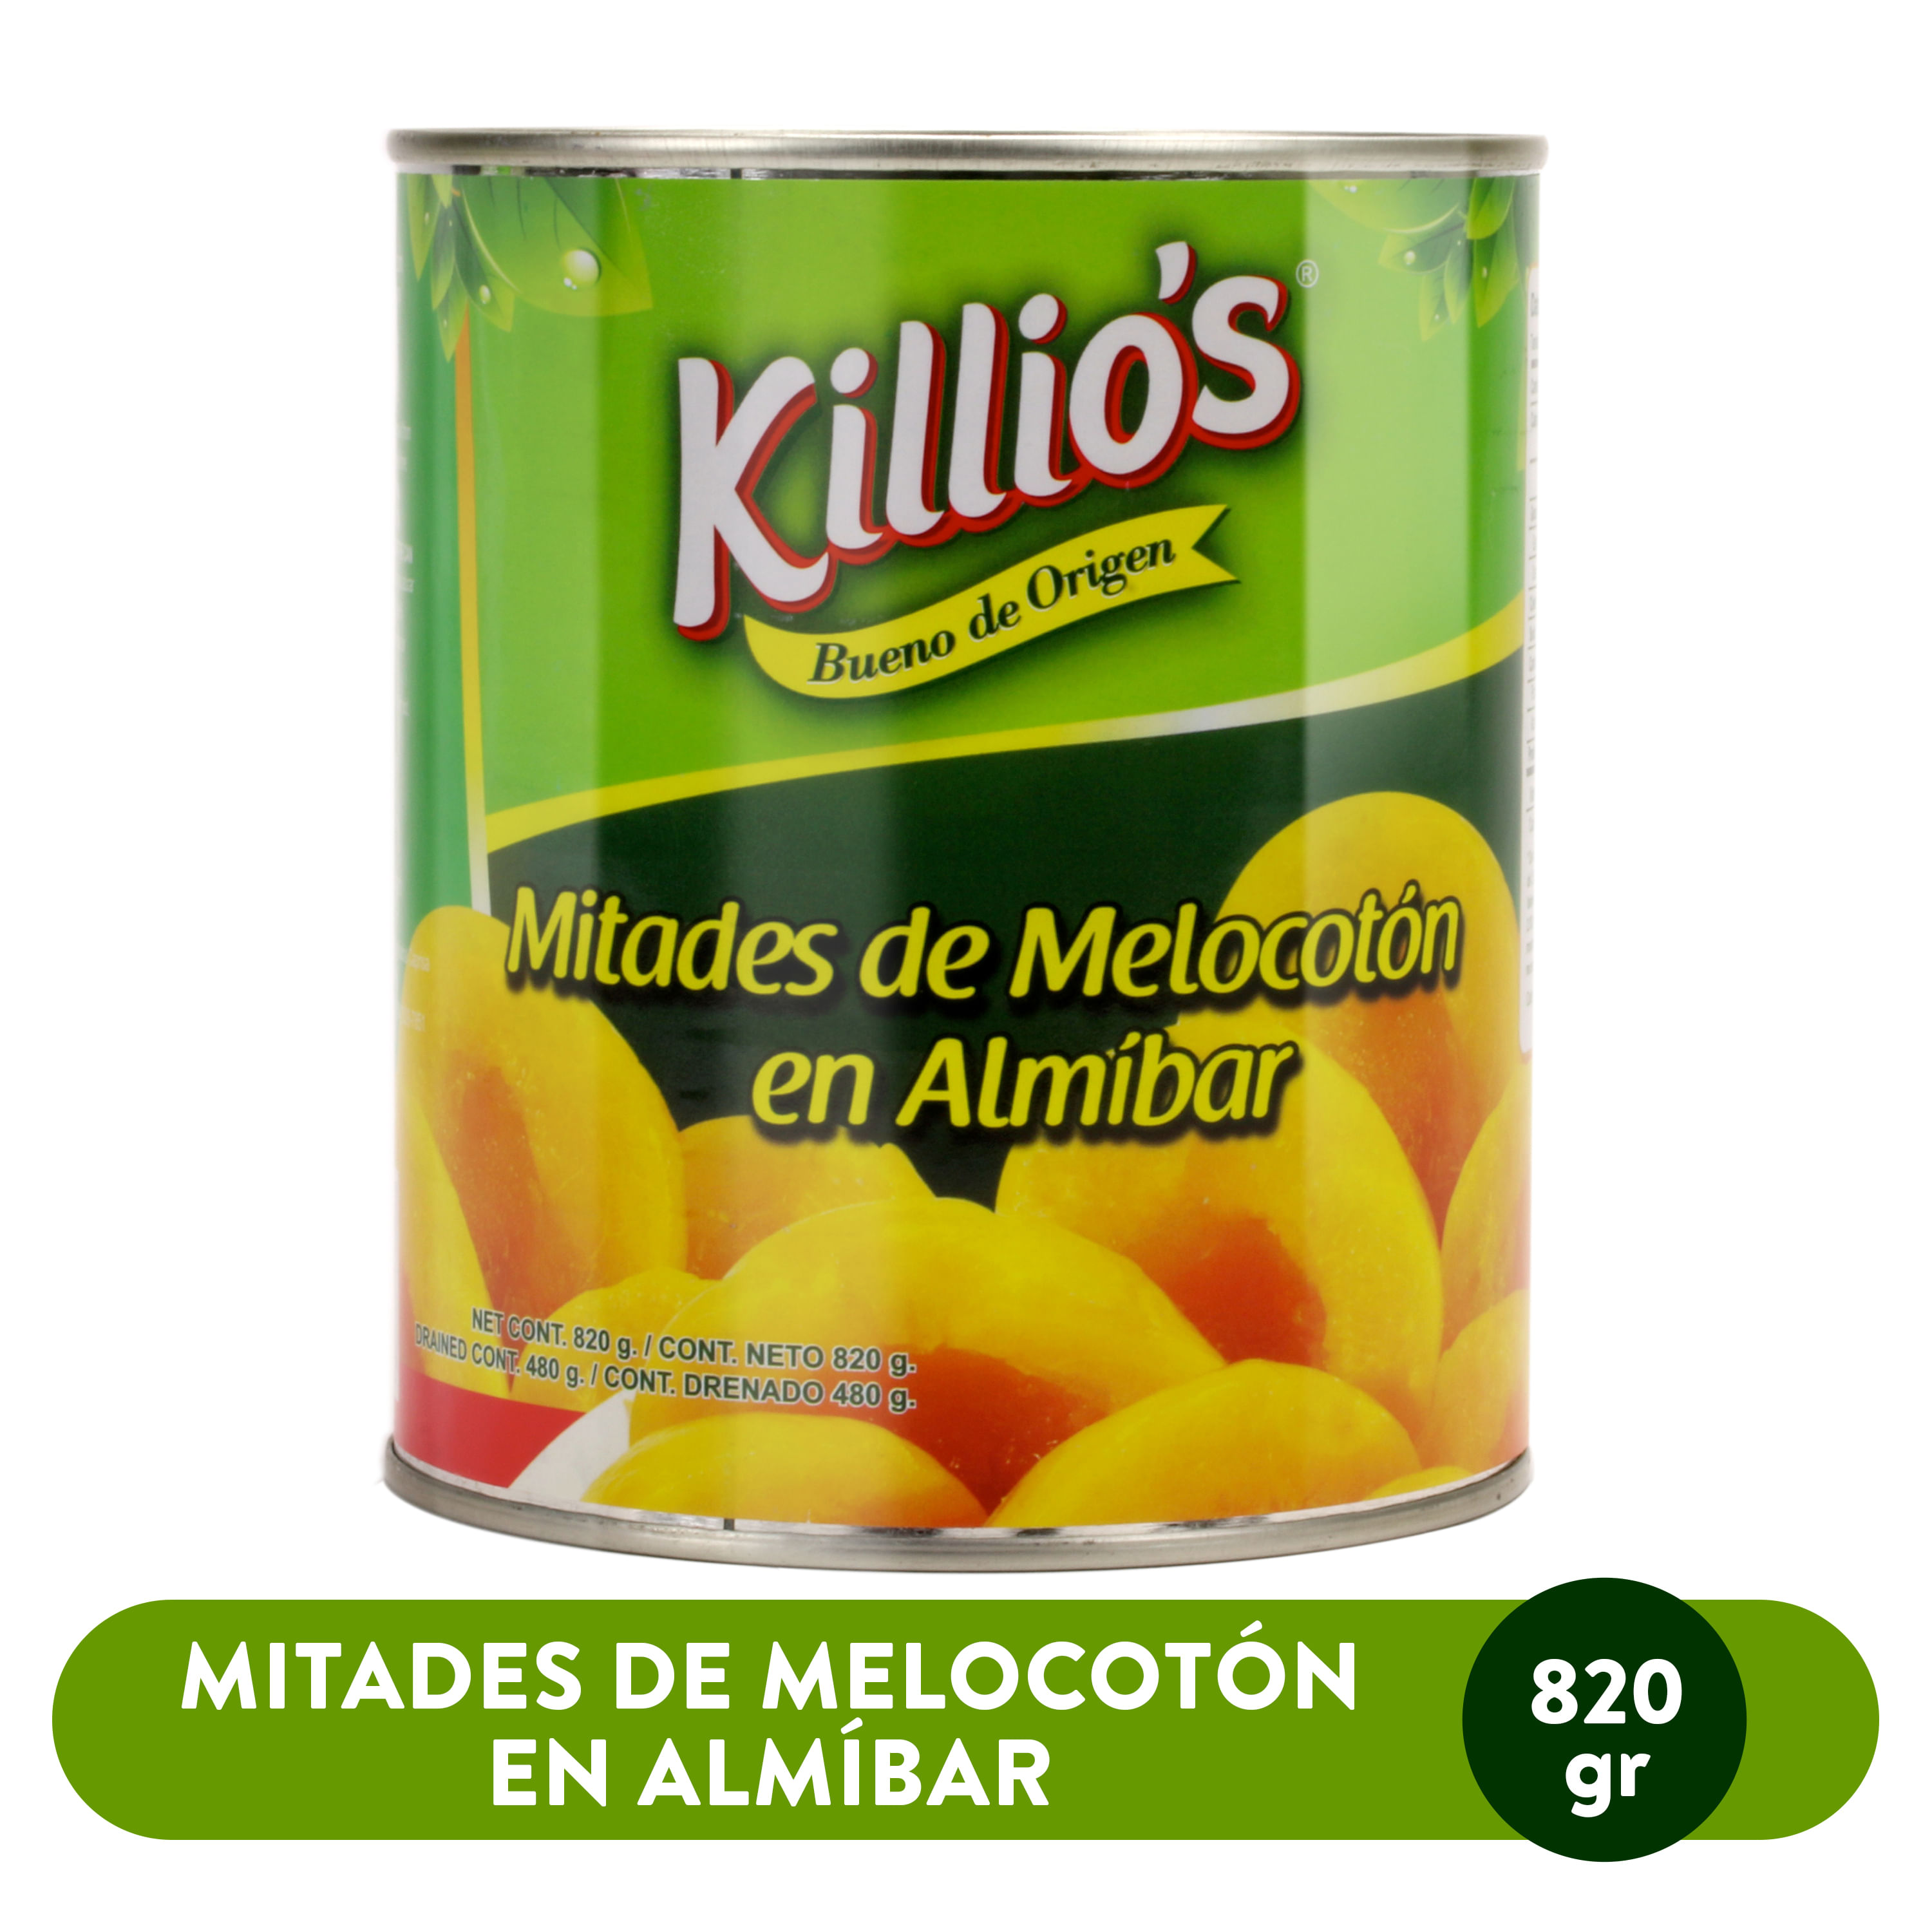 Melocotones-Killios-Mitades-820gr-1-30865